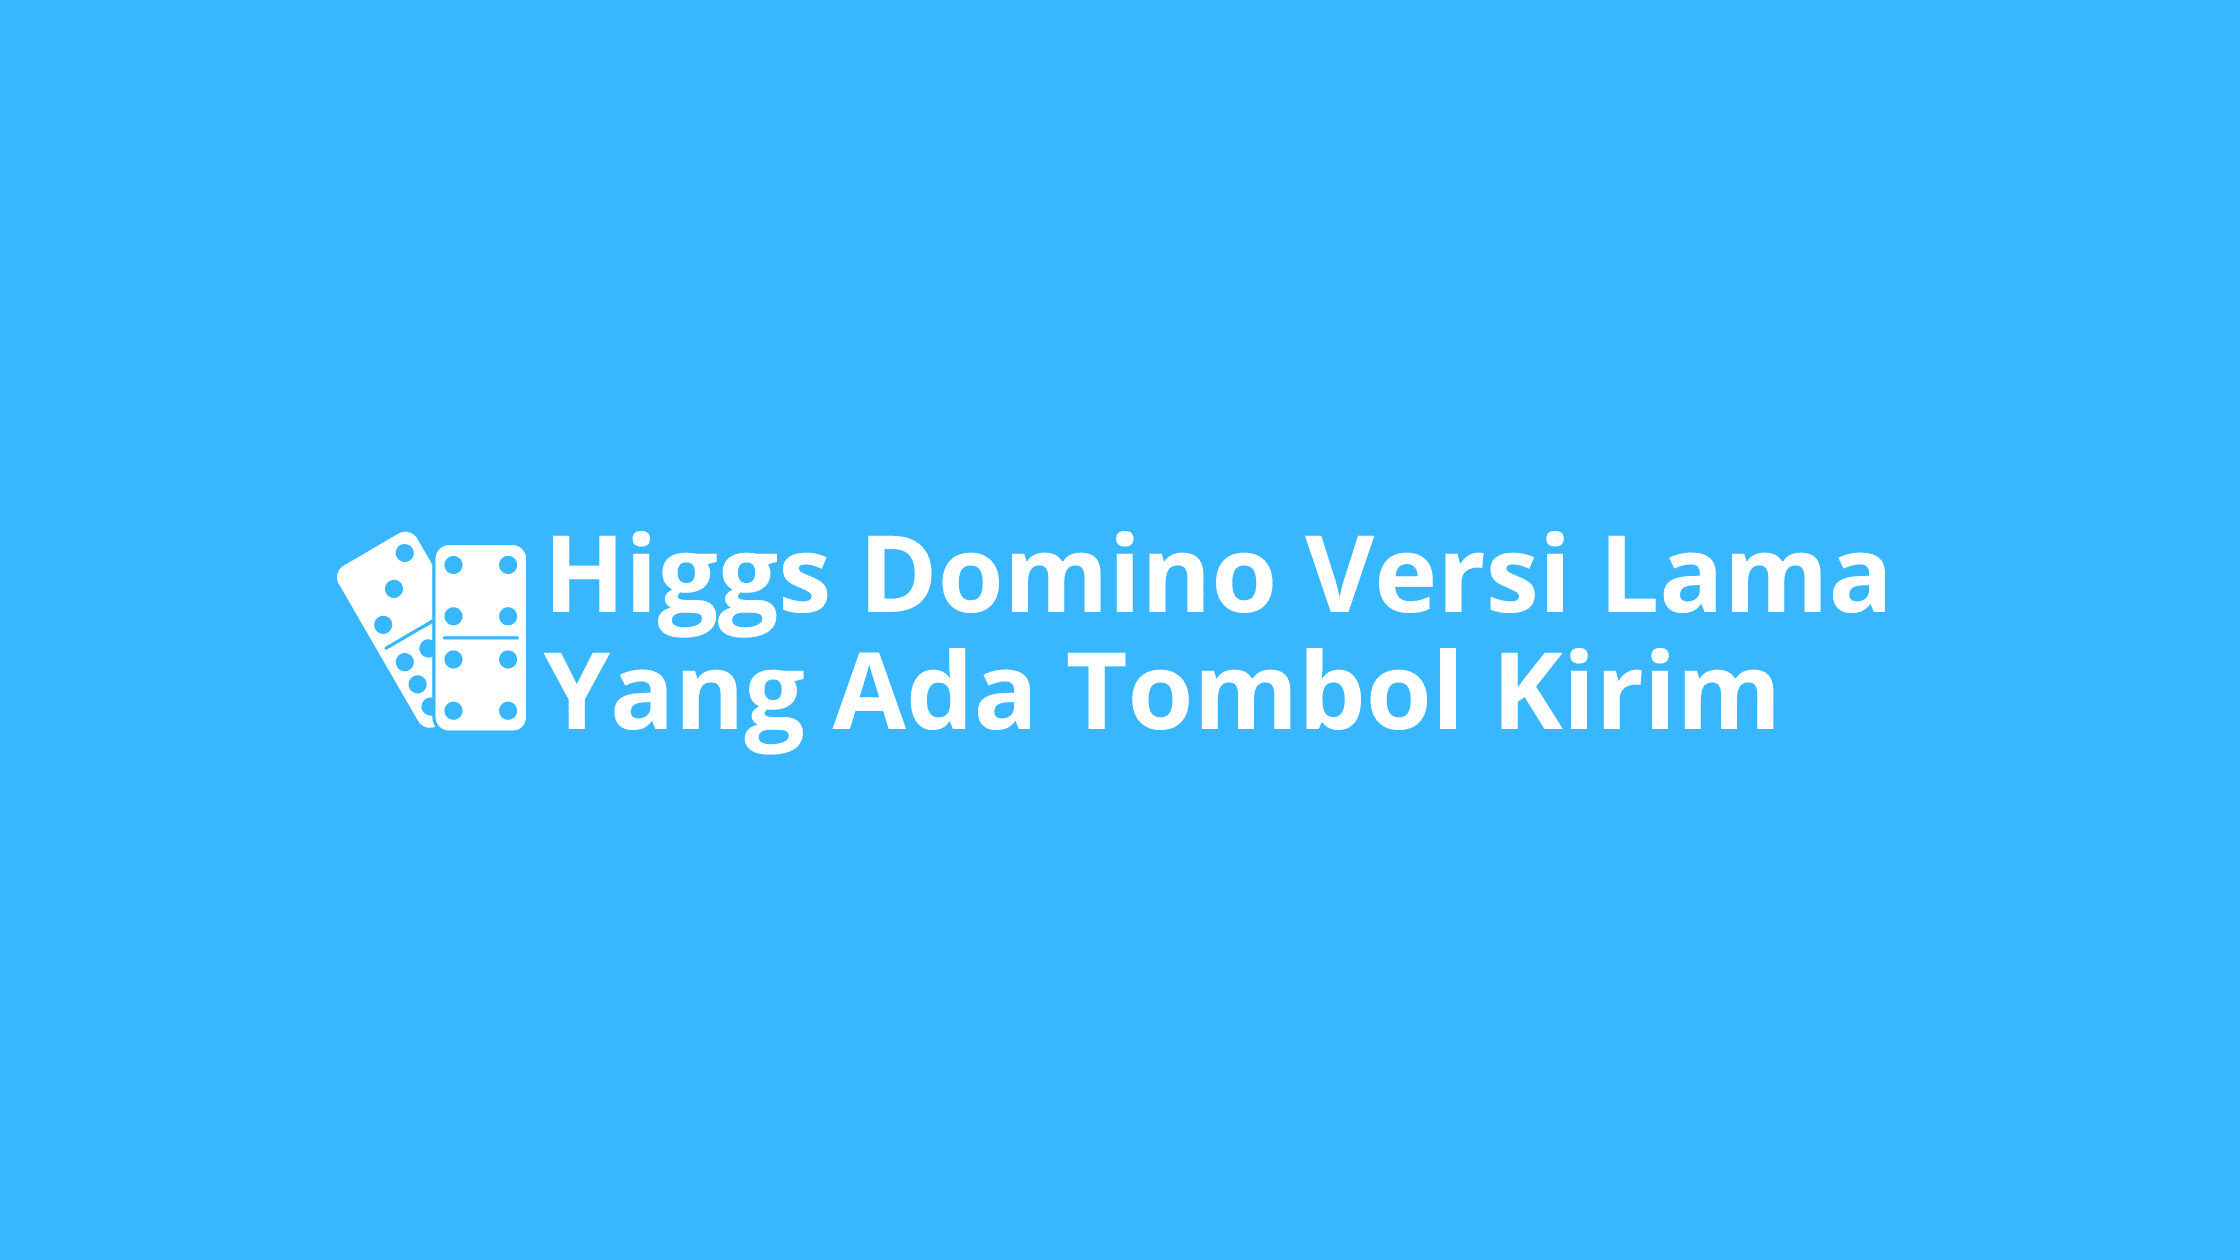 Higgs Domino Versi Lama yang Ada Tombol Kirim